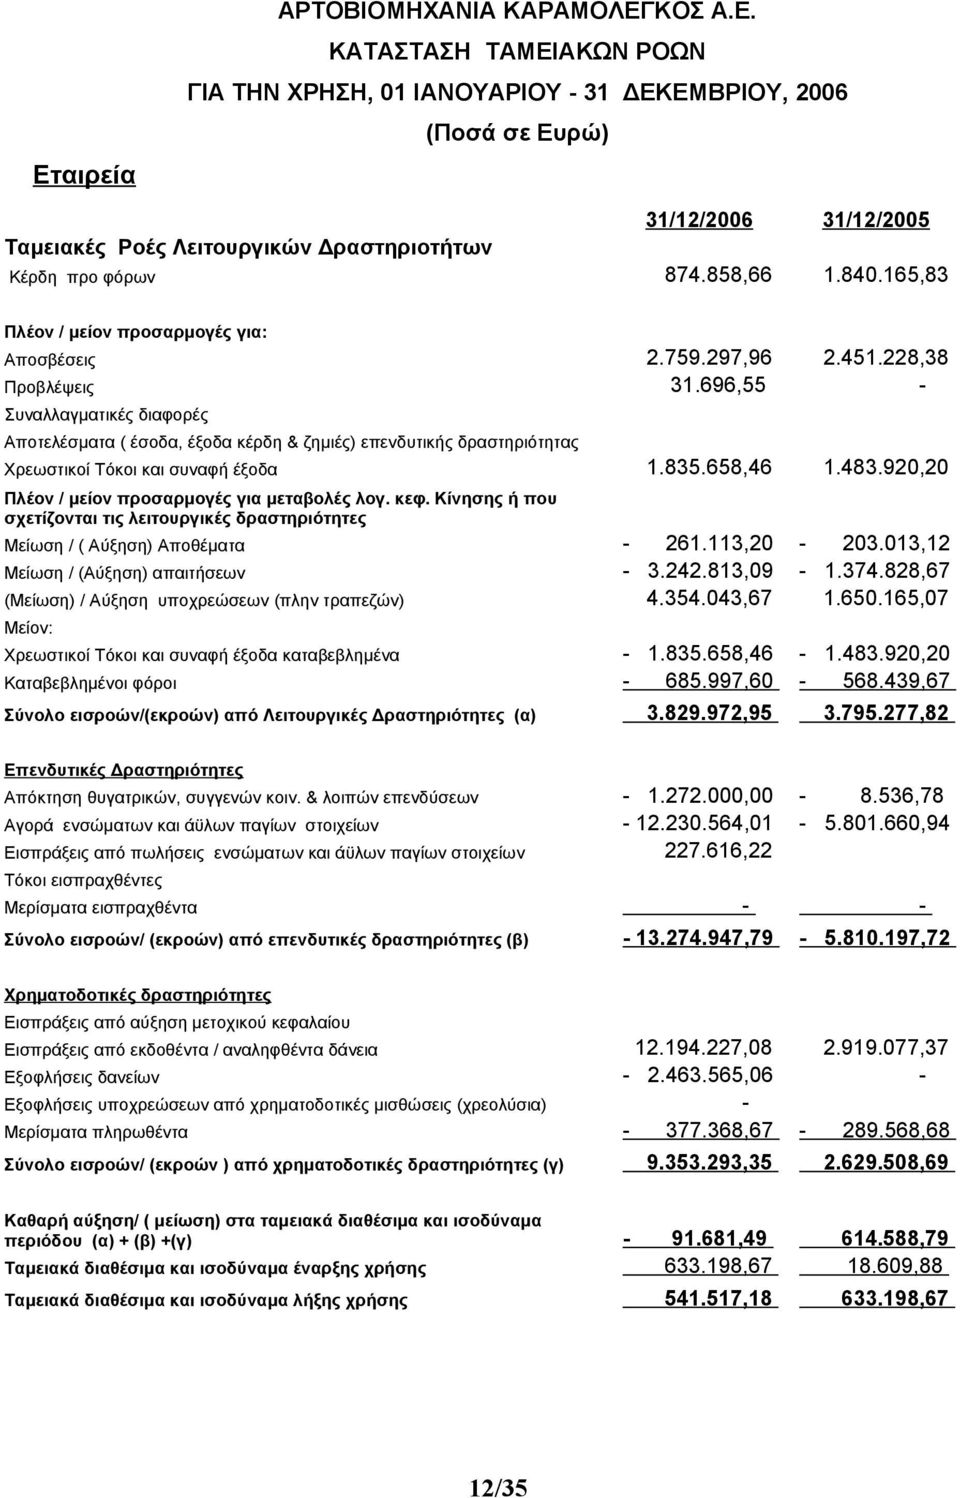 696,55 - Συναλλαγματικές διαφορές Αποτελέσματα ( έσοδα, έξοδα κέρδη & ζημιές) επενδυτικής δραστηριότητας Χρεωστικοί Τόκοι και συναφή έξοδα 1.835.658,46 1.483.